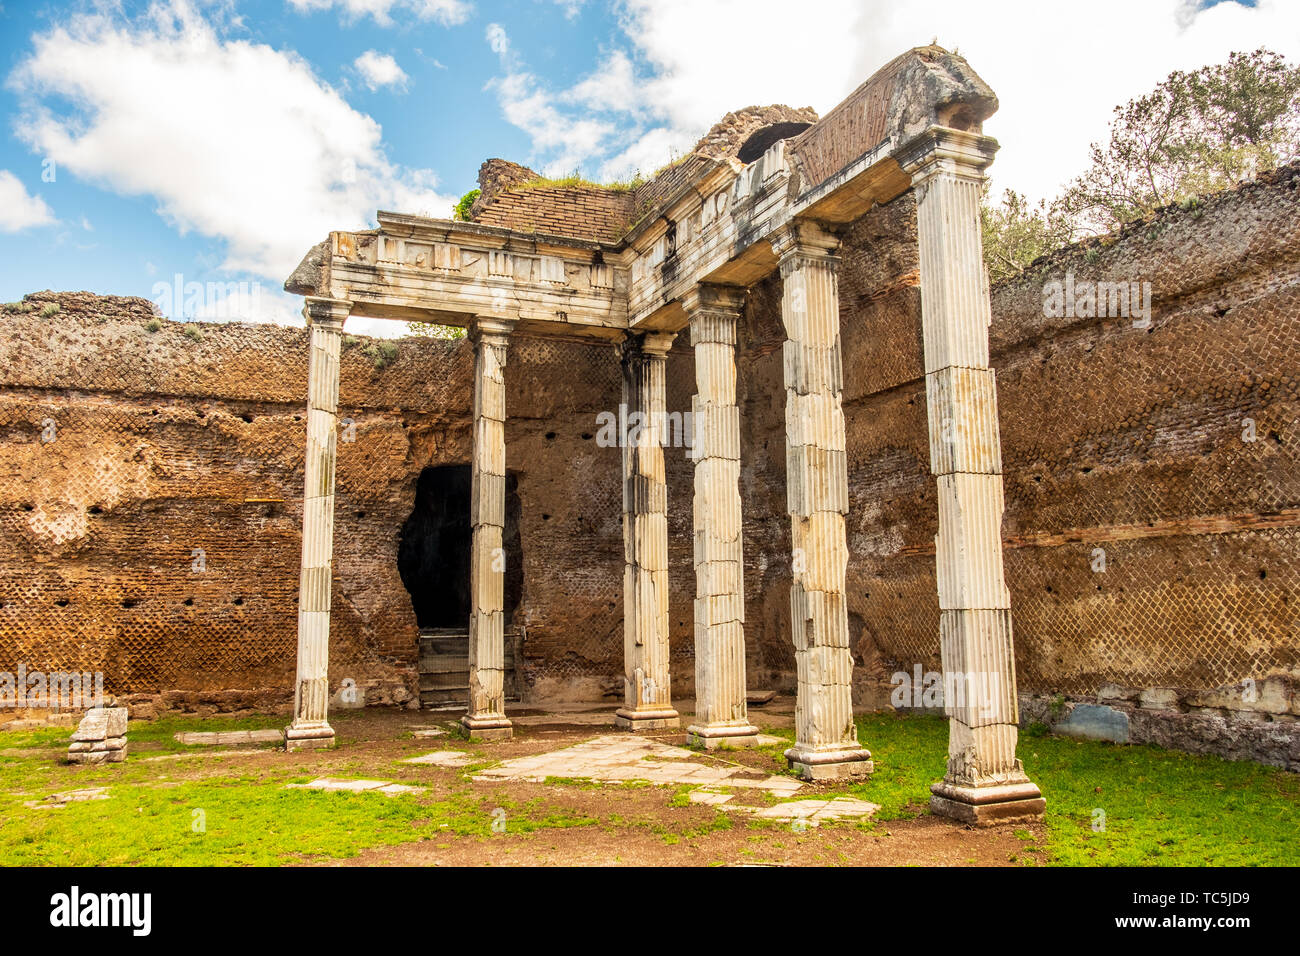 Villa Adriana roman ruins columns - Rome Tivoli - Italy Stock Photo